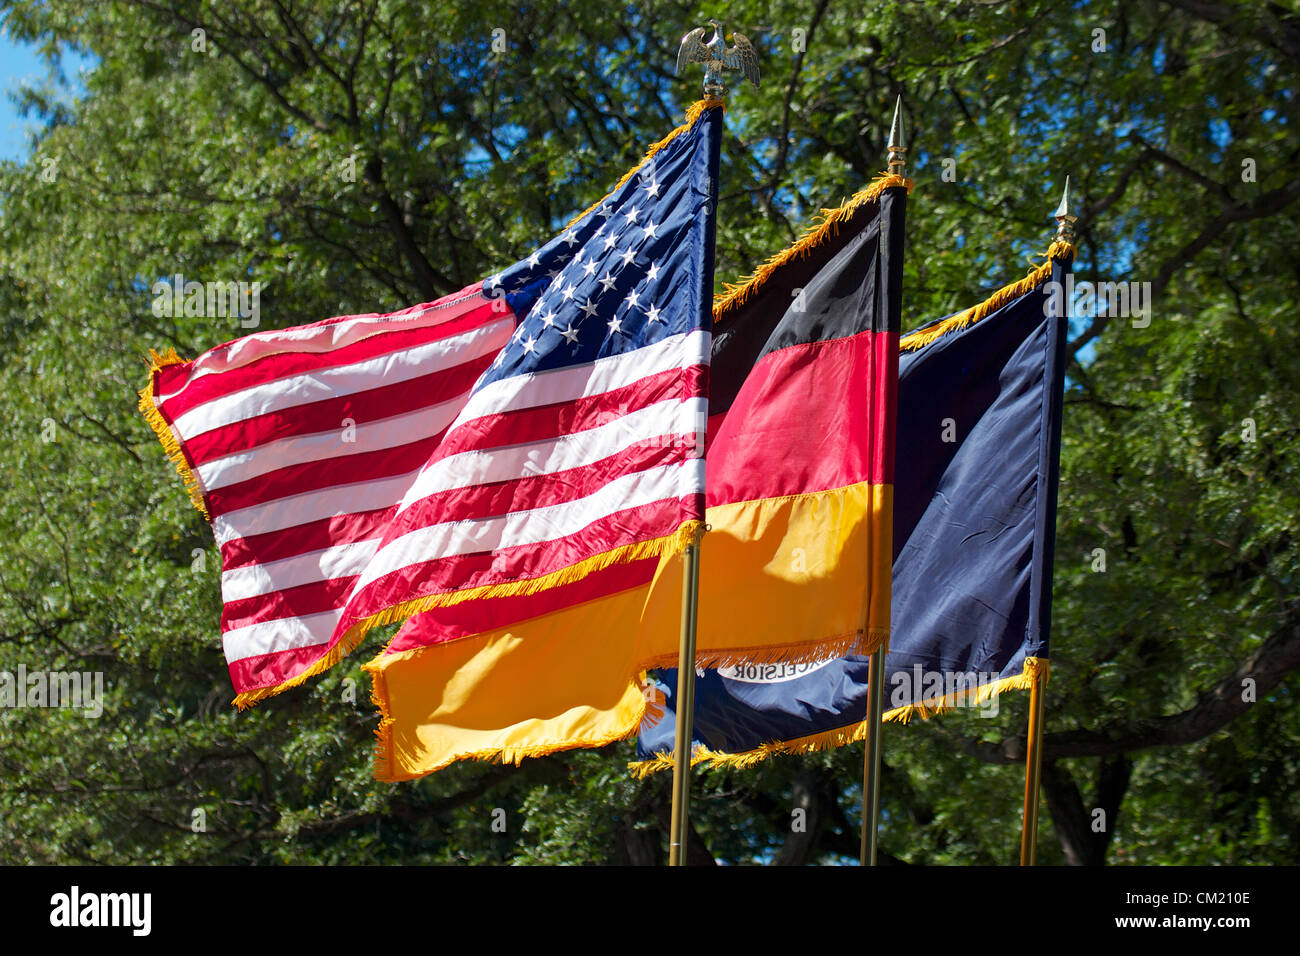 New York, NY - 15 de septiembre de 2012: EE.UU., Estado de NY y banderas alemanas en el 2012 germano-americano Steuben Parade en la Ciudad de Nueva York. Foto de stock